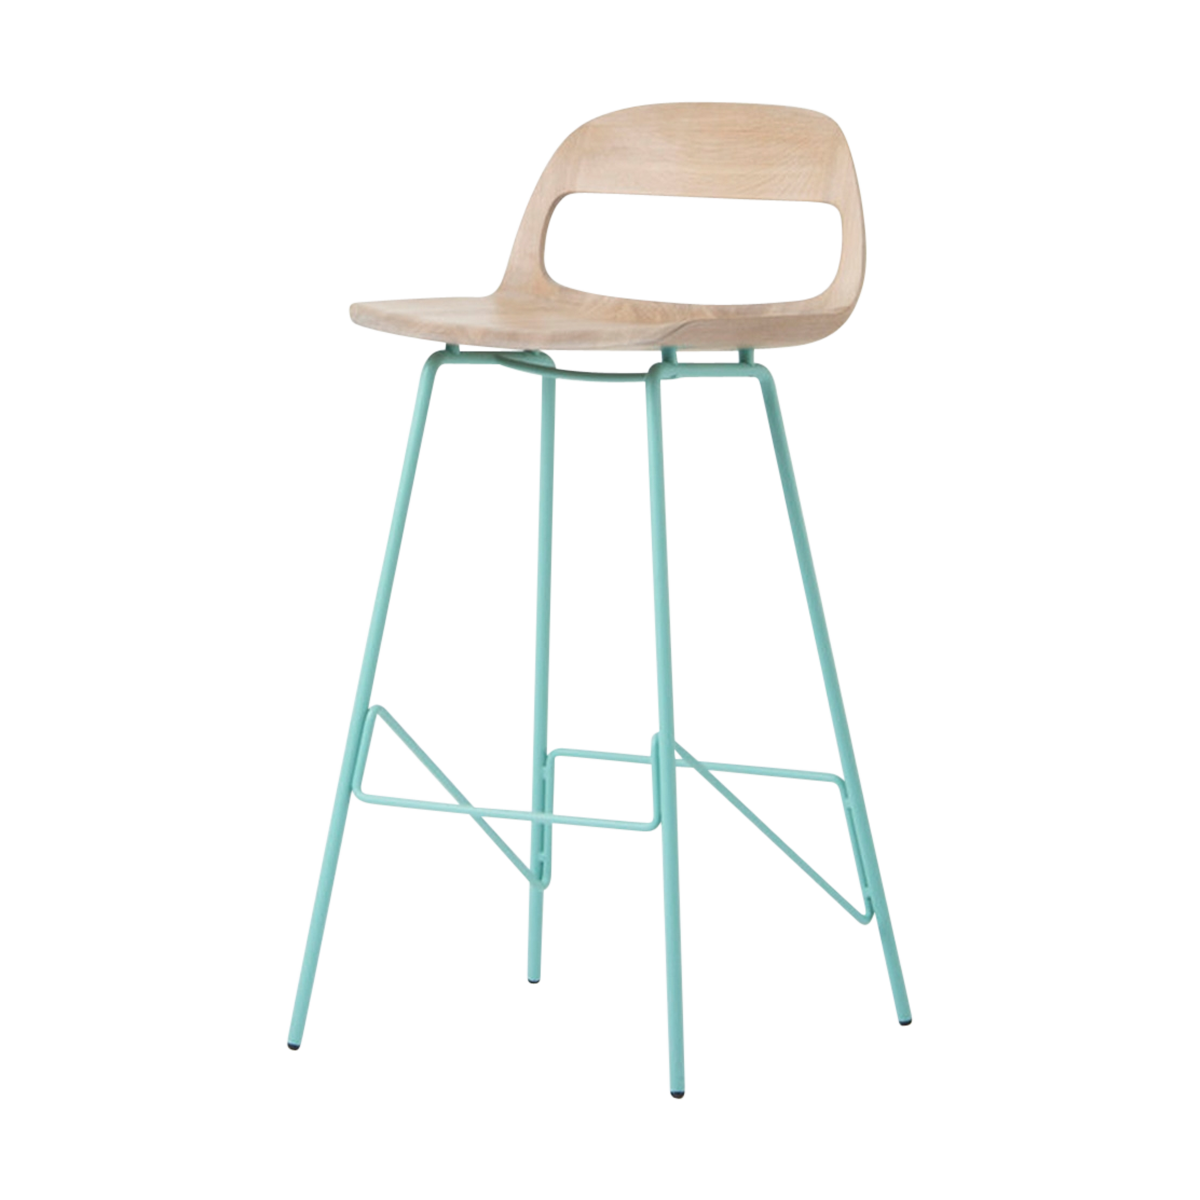 Leina bar chair - barkruk met houten zitting en groen onderstel - 75 cm 